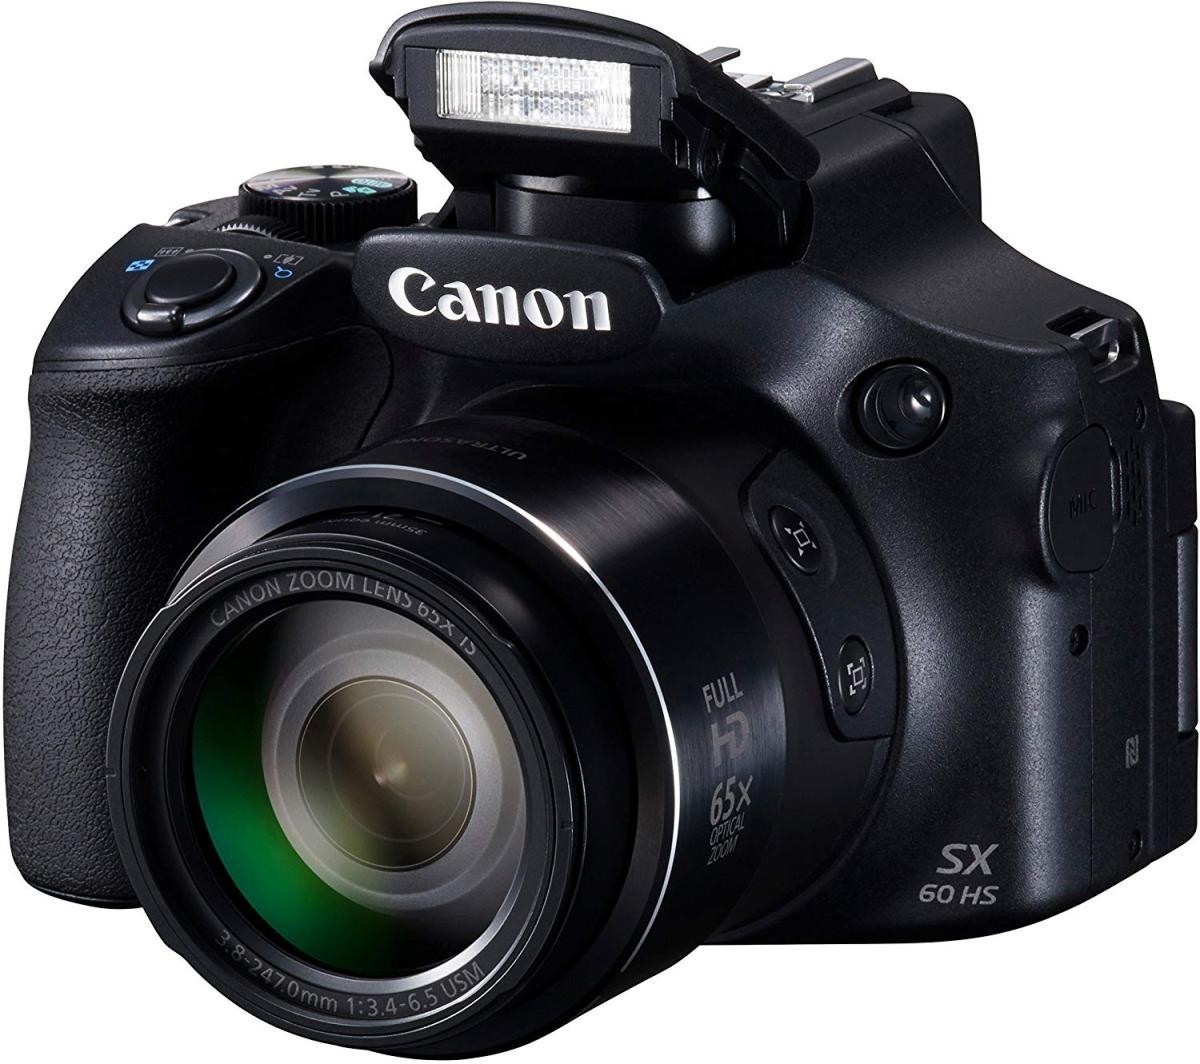 中古 美品 Canon PowerShot SX60 HS デジカメ パワーショット キャノン コンデジカメラ デジタルカメラ_画像2